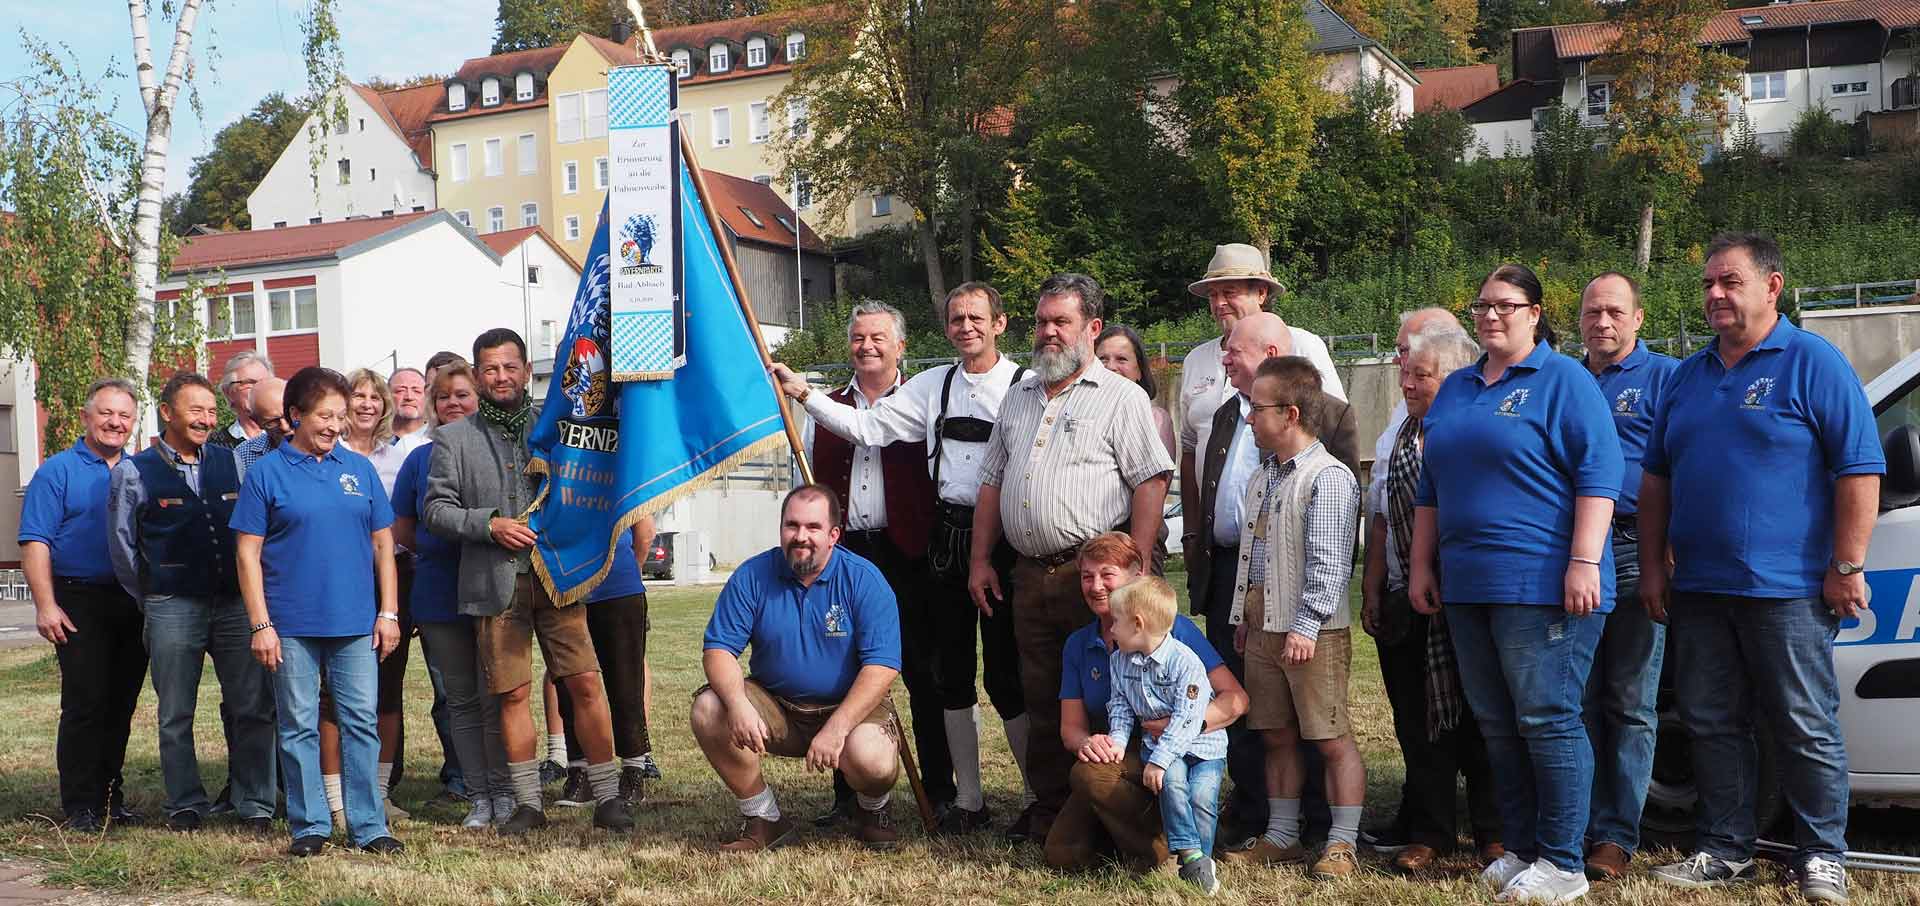 Der Ortsverein der Bayernpartei in Bad Abbach hat nun eine eigene und geweihte Fahne (Foto: br-medienagentur)